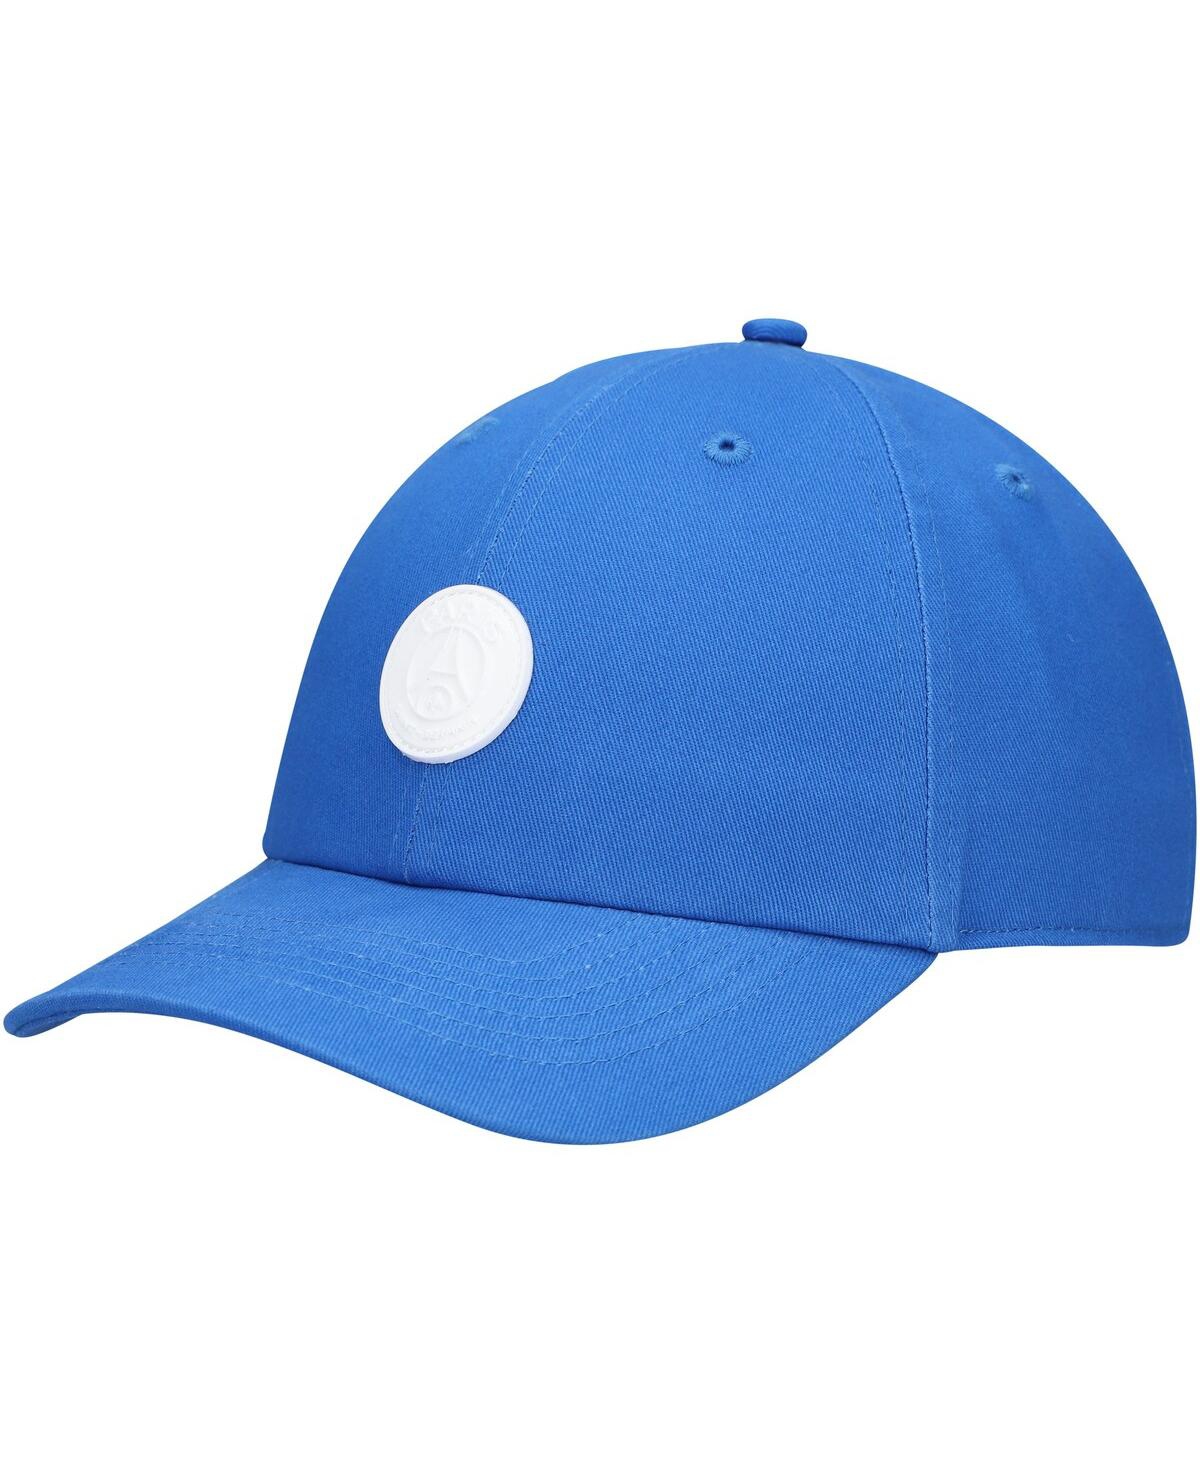 Fan Ink Men's Blue Paris Saint-germain Casuals Adjustable Hat